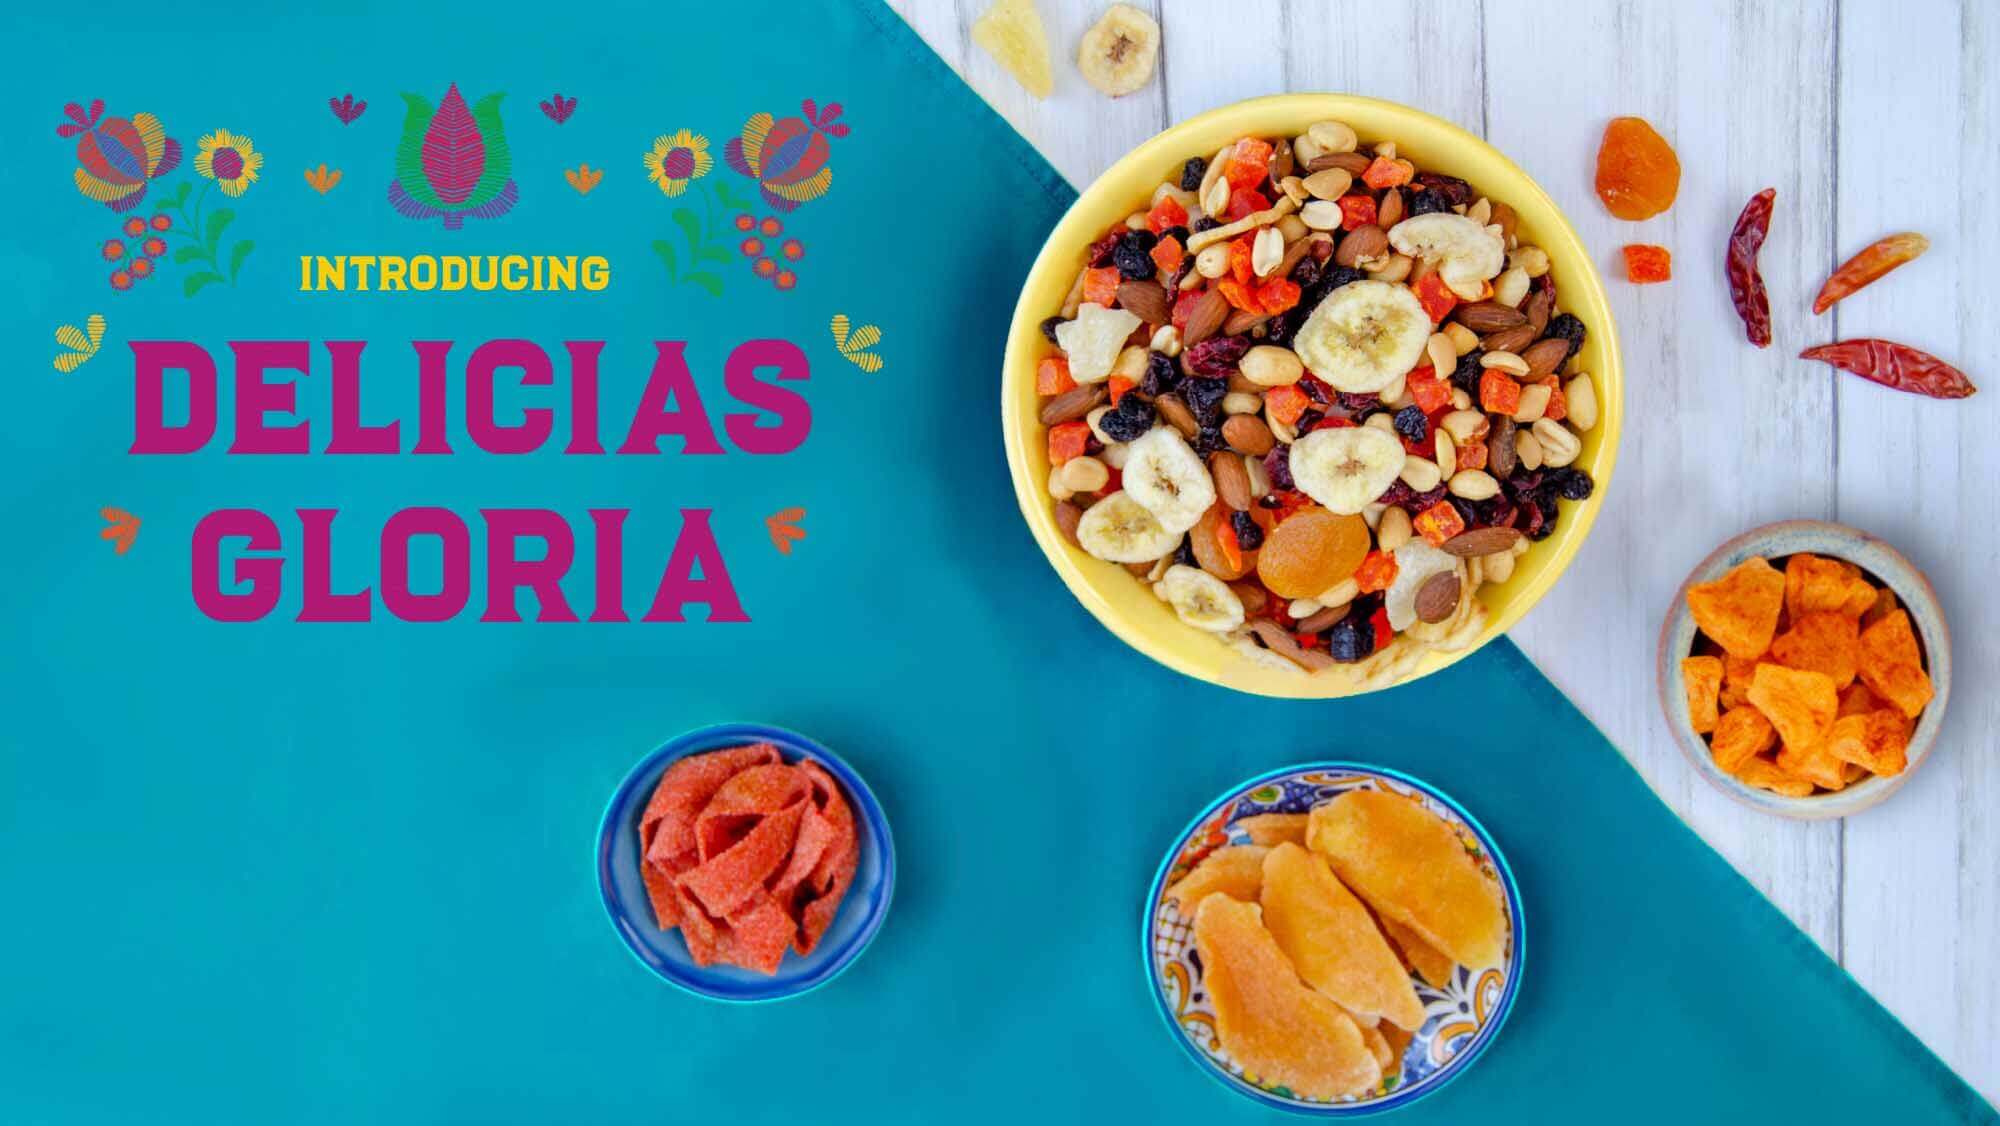 /images/slides/Delicias-Gloria.jpg